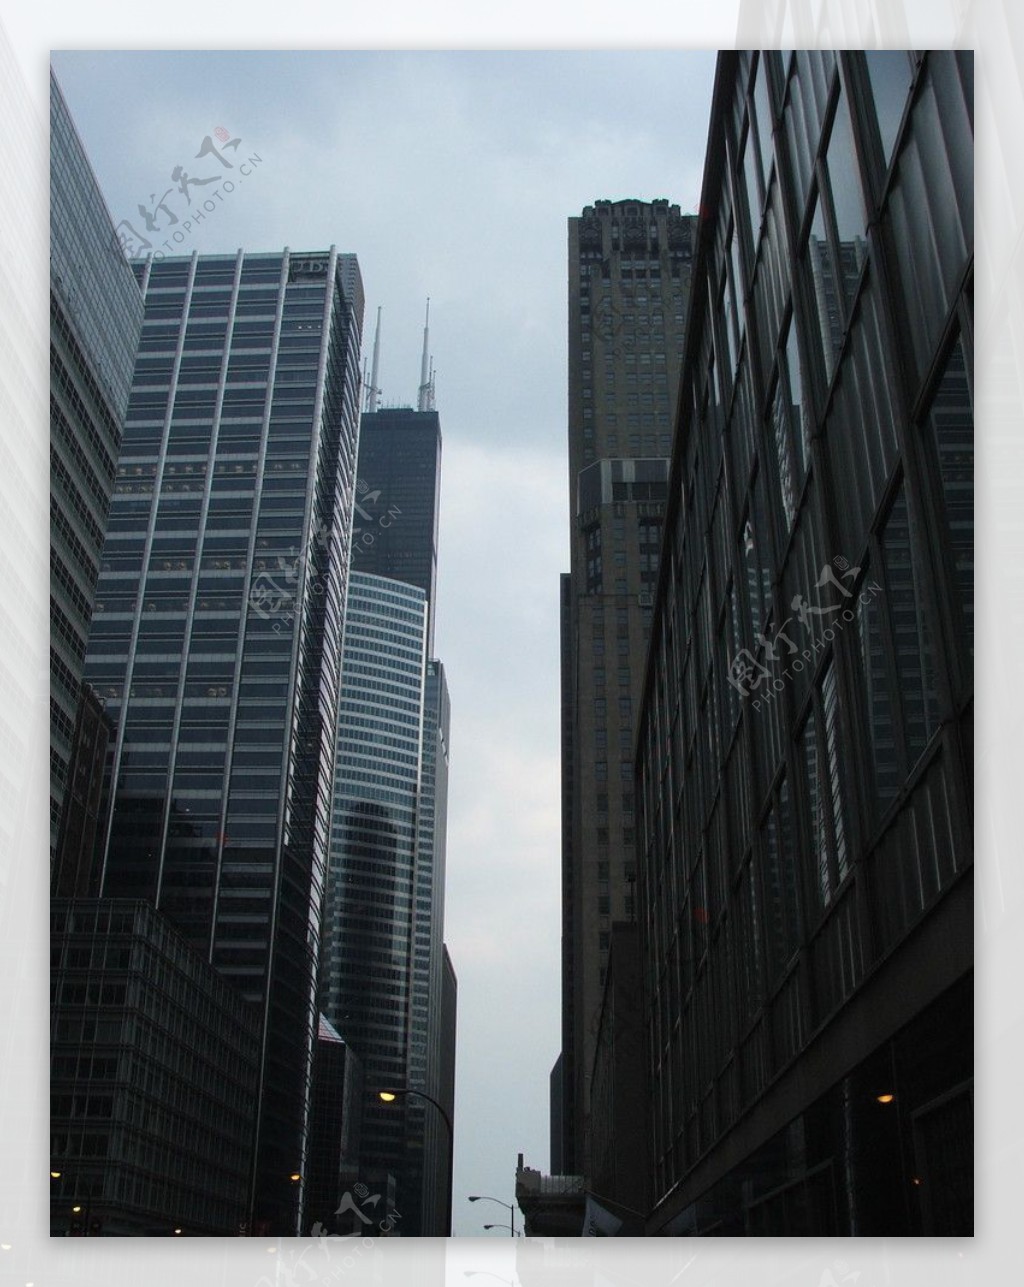 芝加哥高楼间的一线天图片